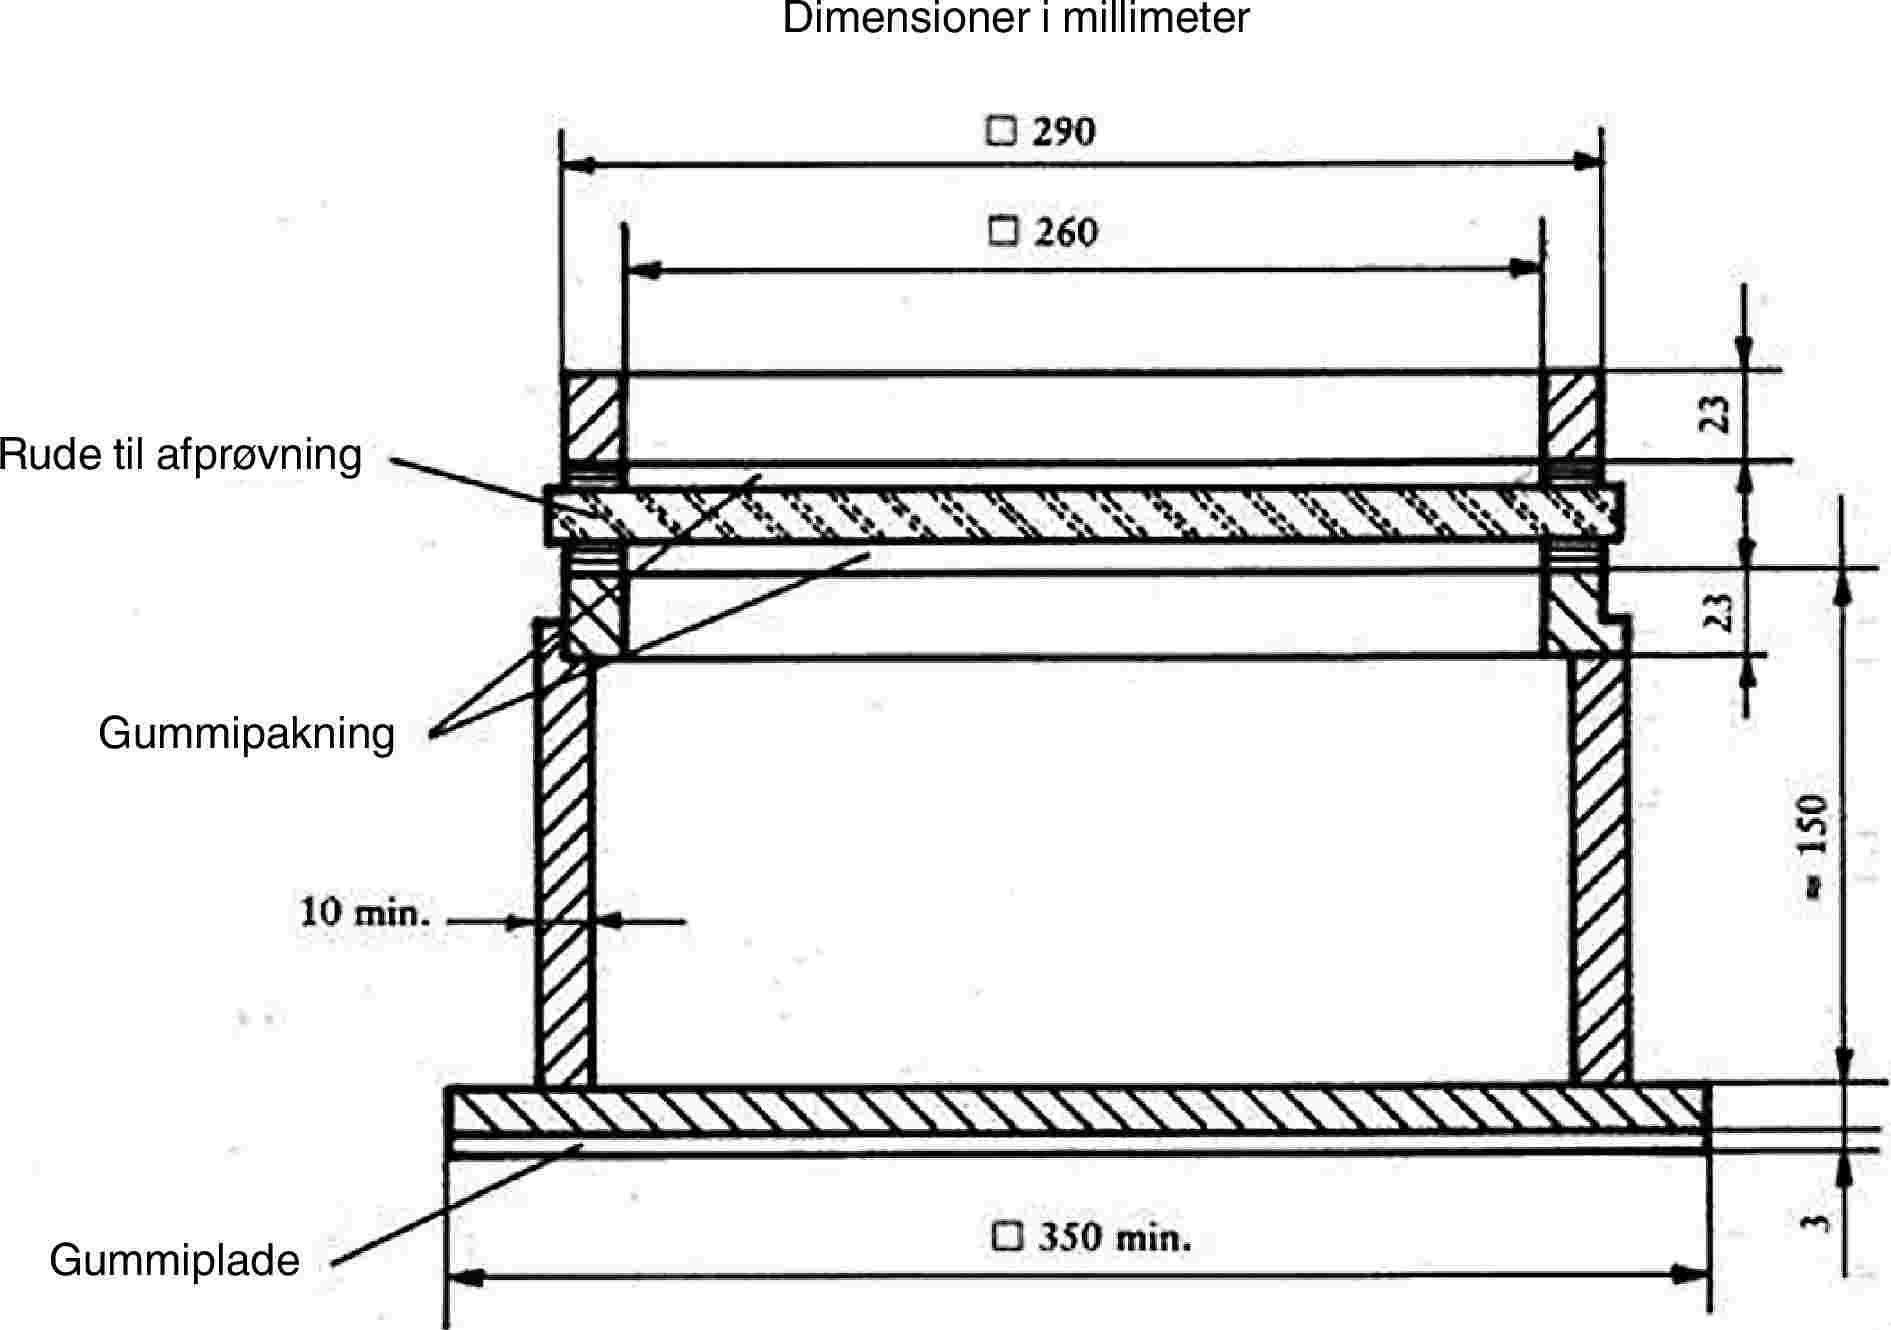 Dimensioner i millimeterRude til afprøvningGummipakningGummiplade